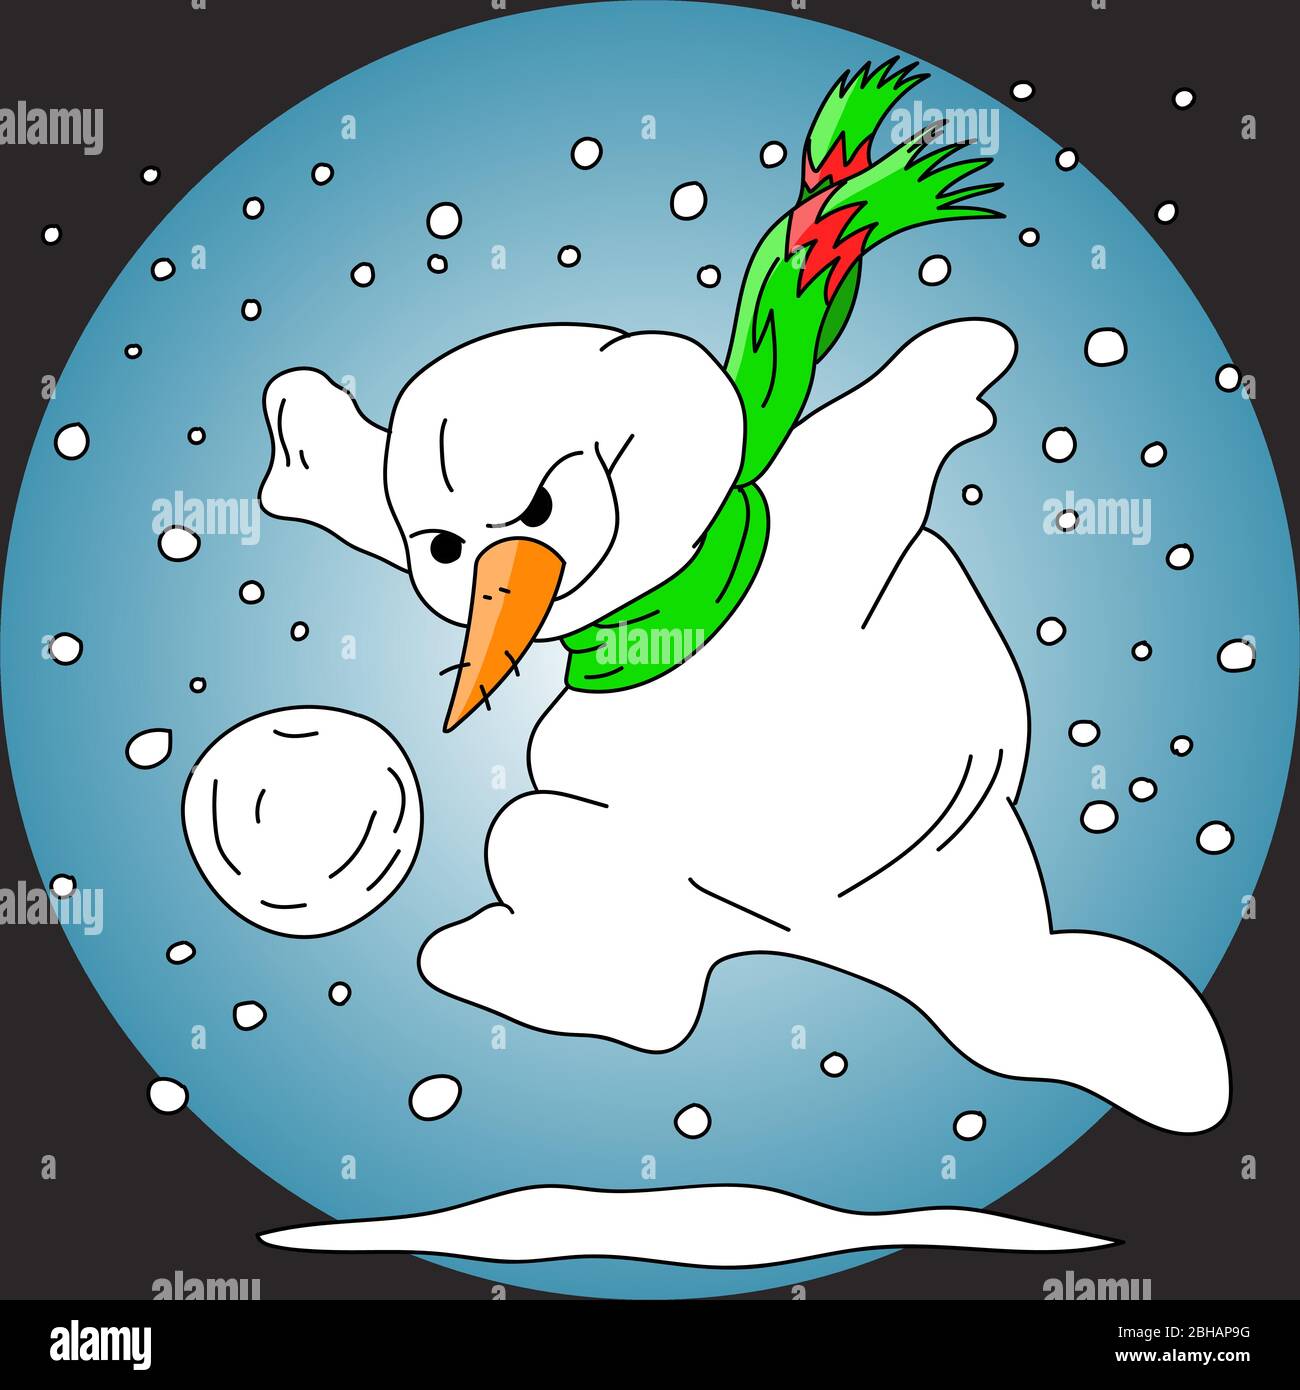 Dibujo animado muñeco de nieve jugando ilustración vectorial de fútbol Ilustración del Vector